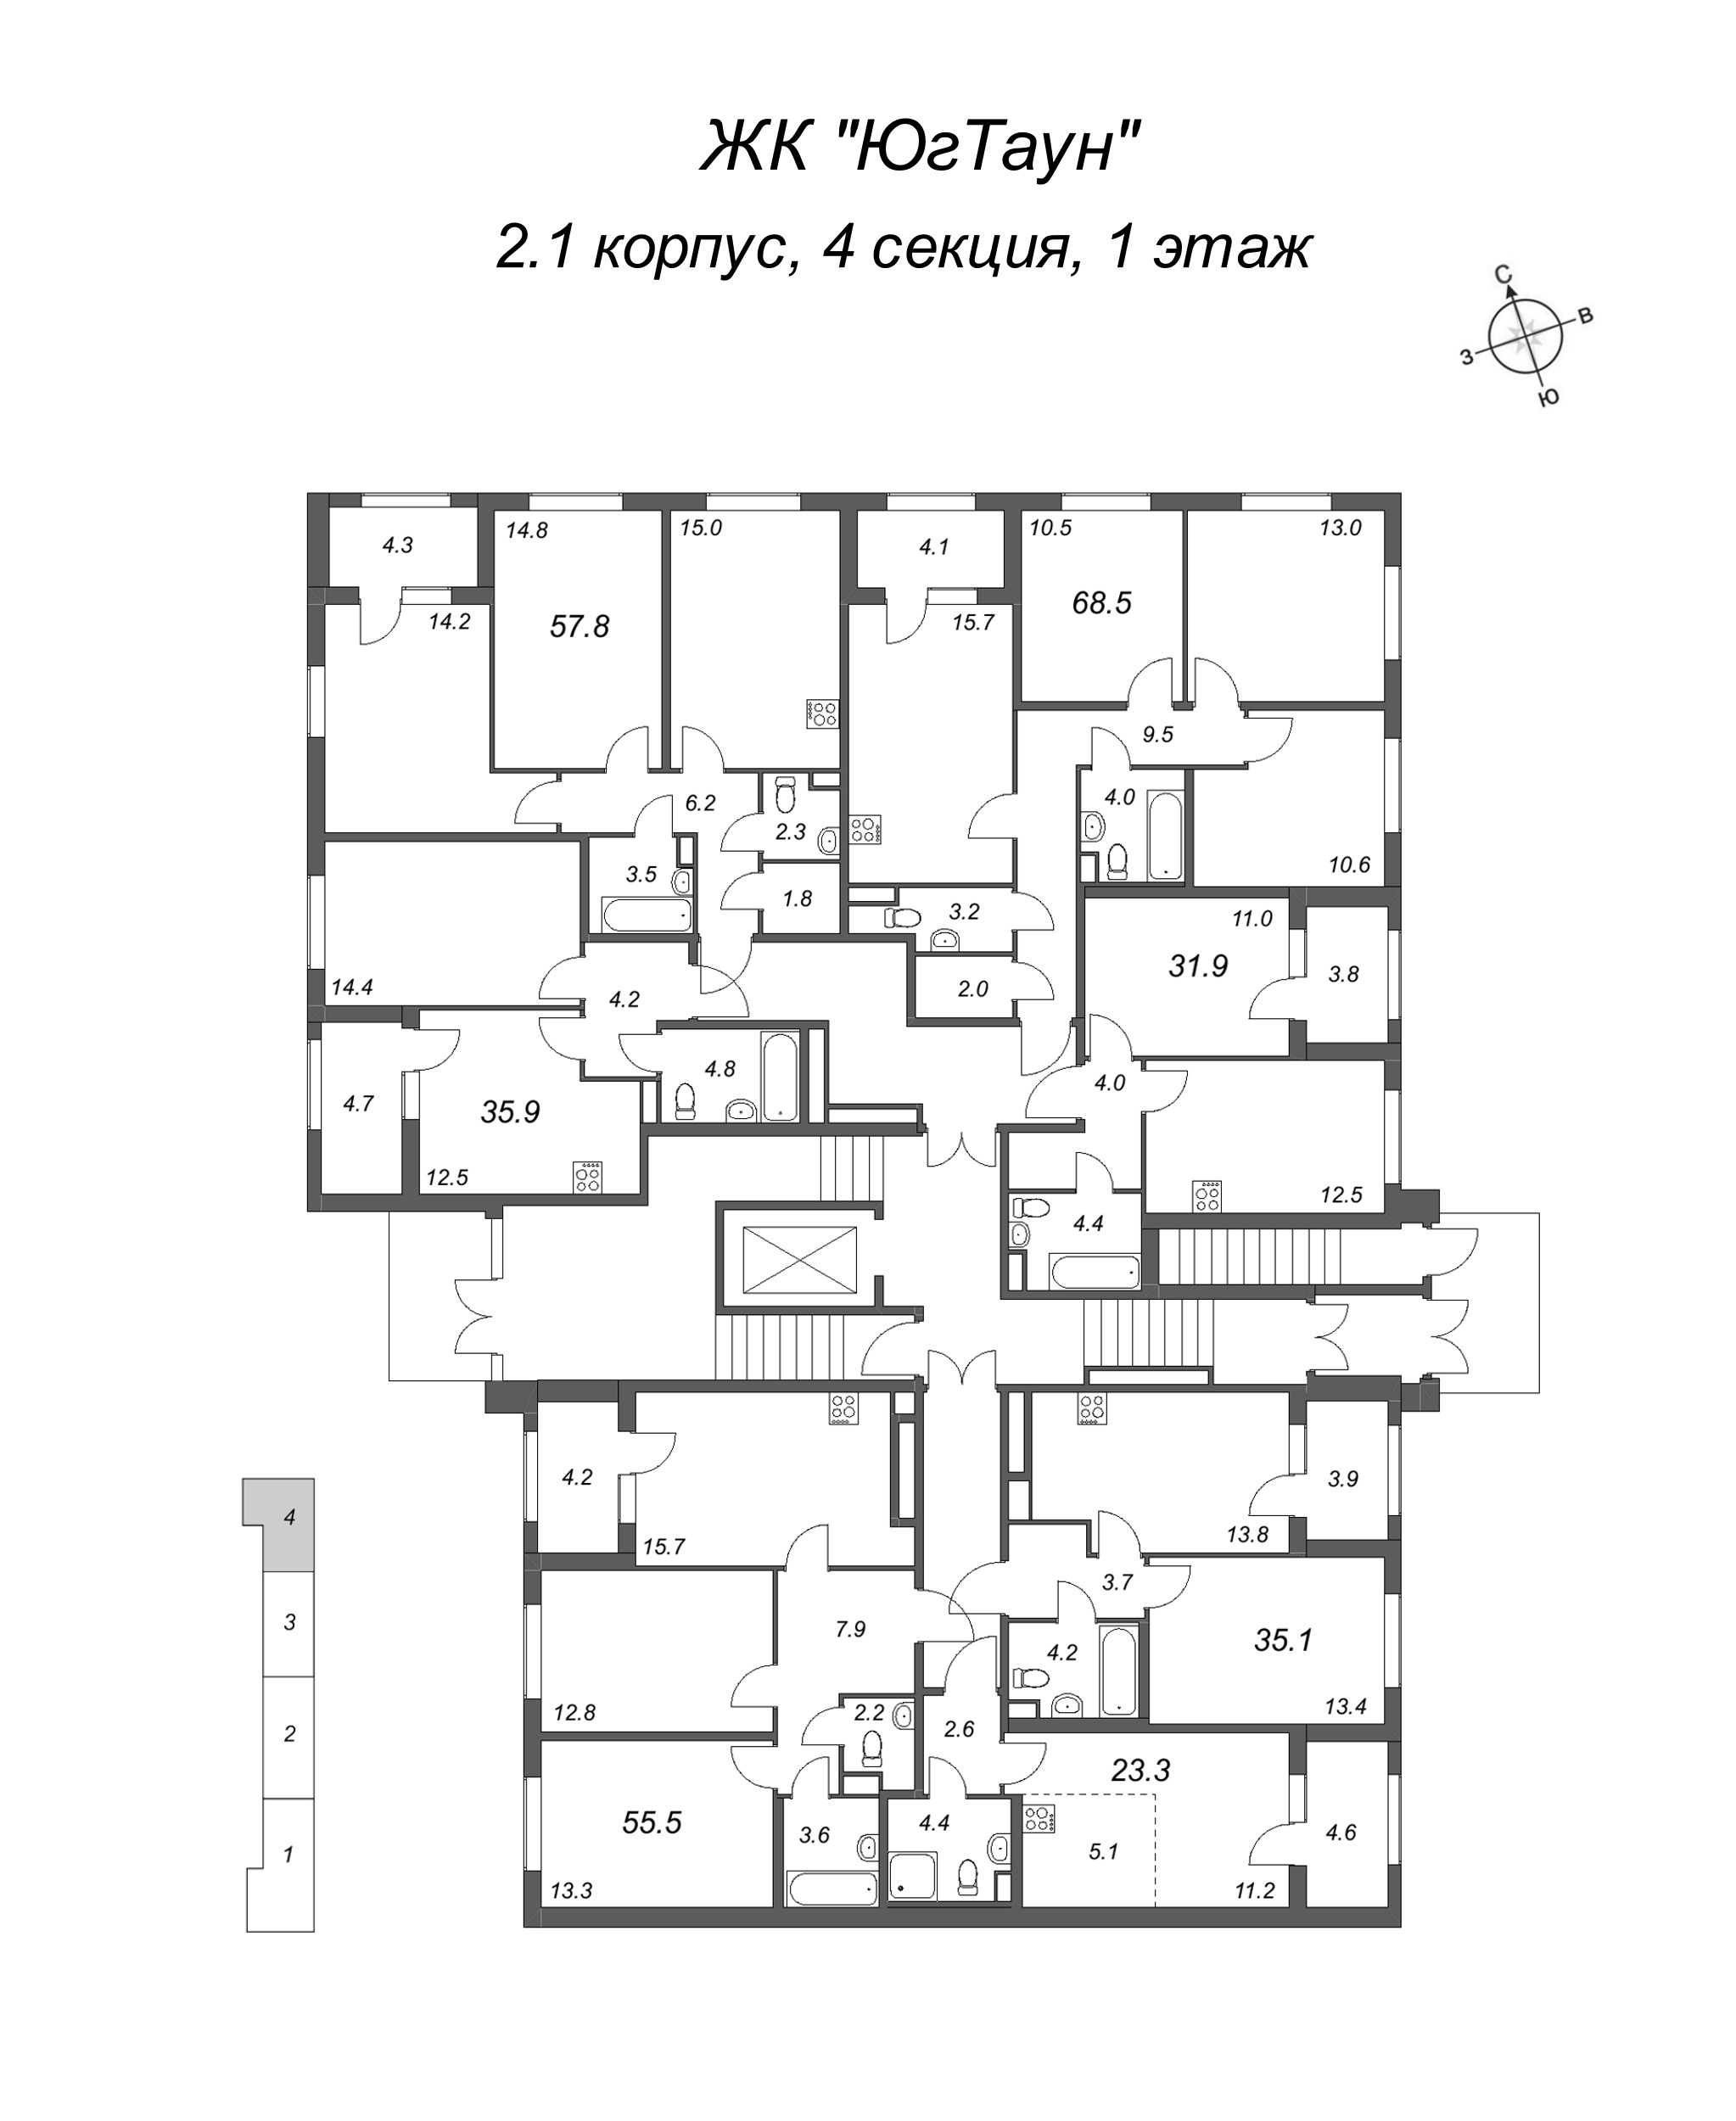 1-комнатная квартира, 35.9 м² в ЖК "ЮгТаун" - планировка этажа